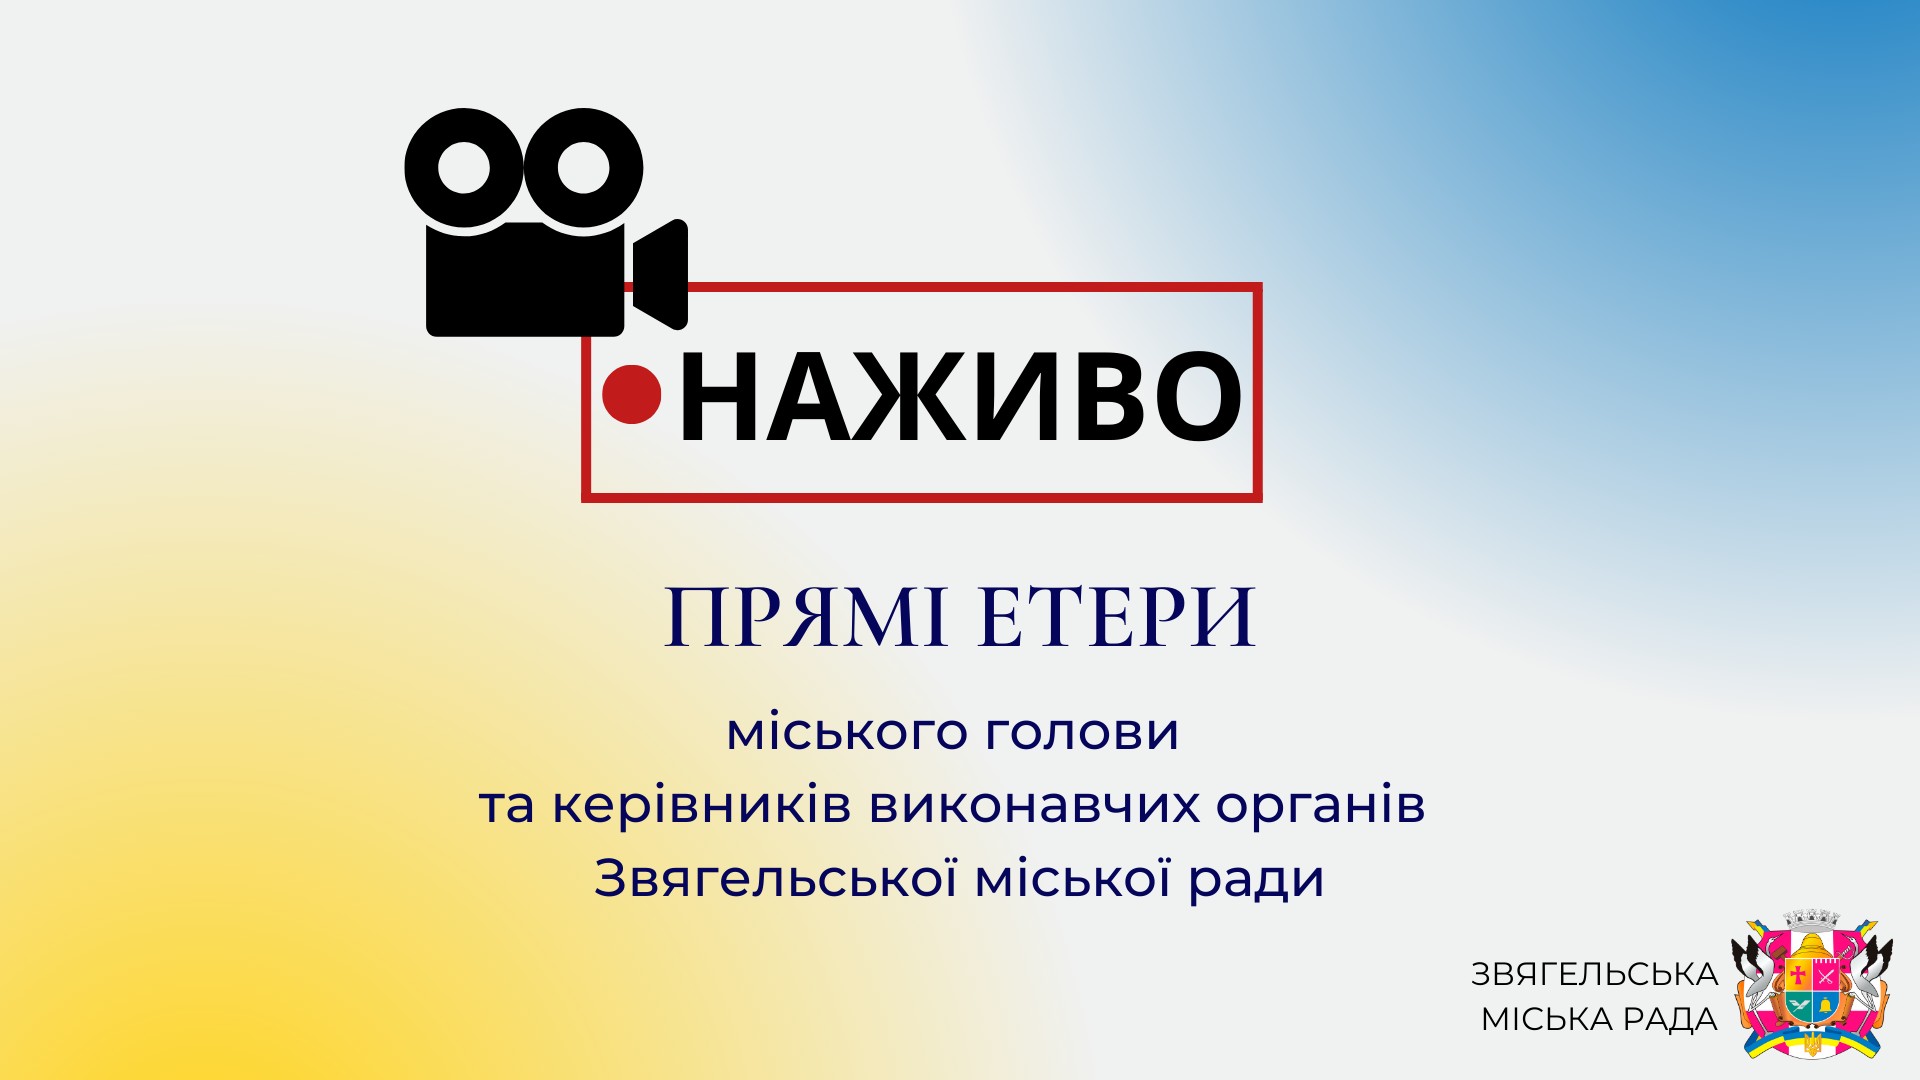 19 грудня о 18:00 відбудеться прямий етер з начальницею відділу внутрішнього аудиту міської ради Оленою Демянюк